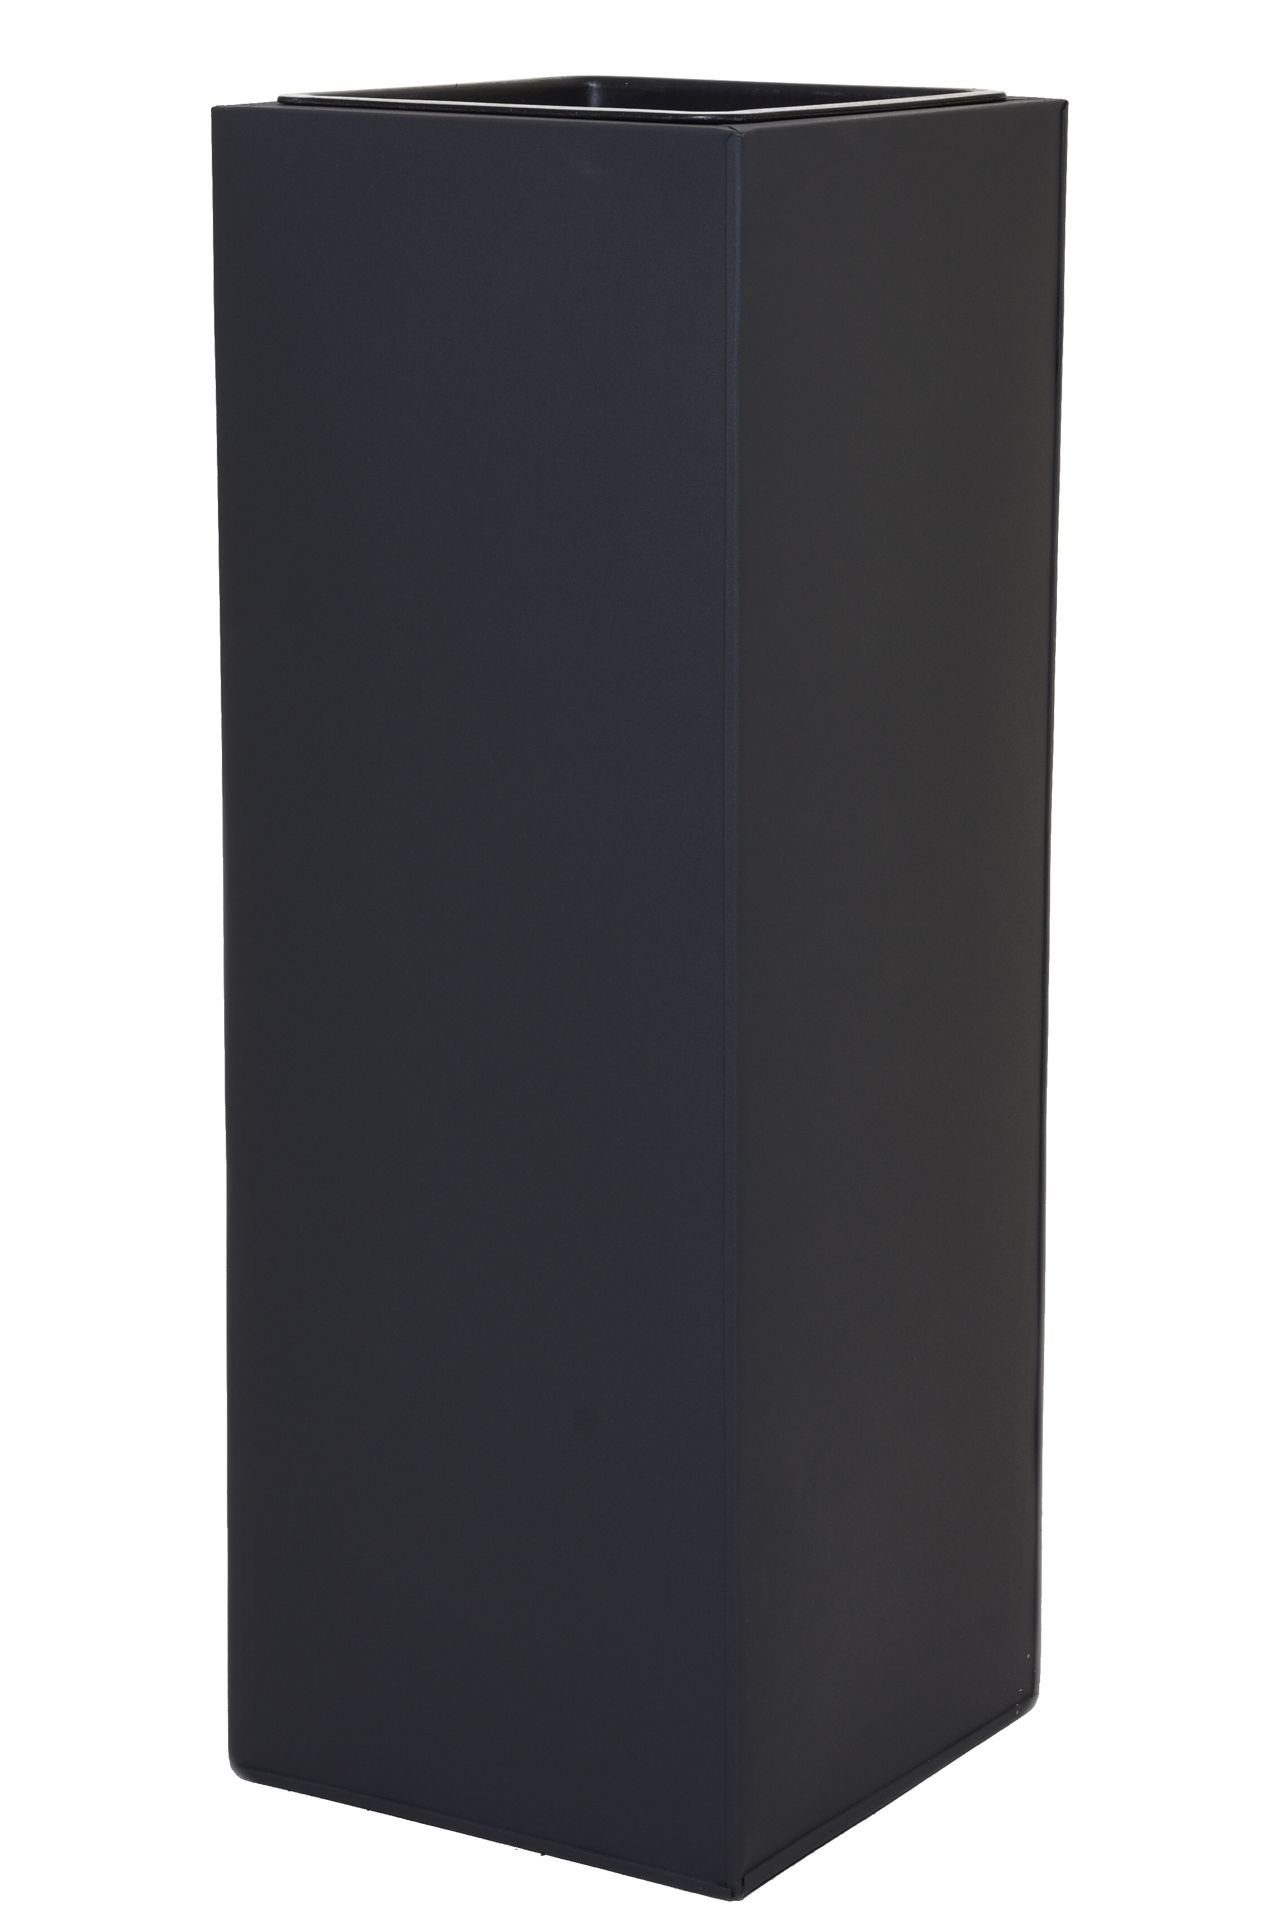 VIVANNO Pflanzkübel Pflanzkübel Blumenkübel Zink "Block", Anthrazit -  24x24x65 cm (mit Einsatz)